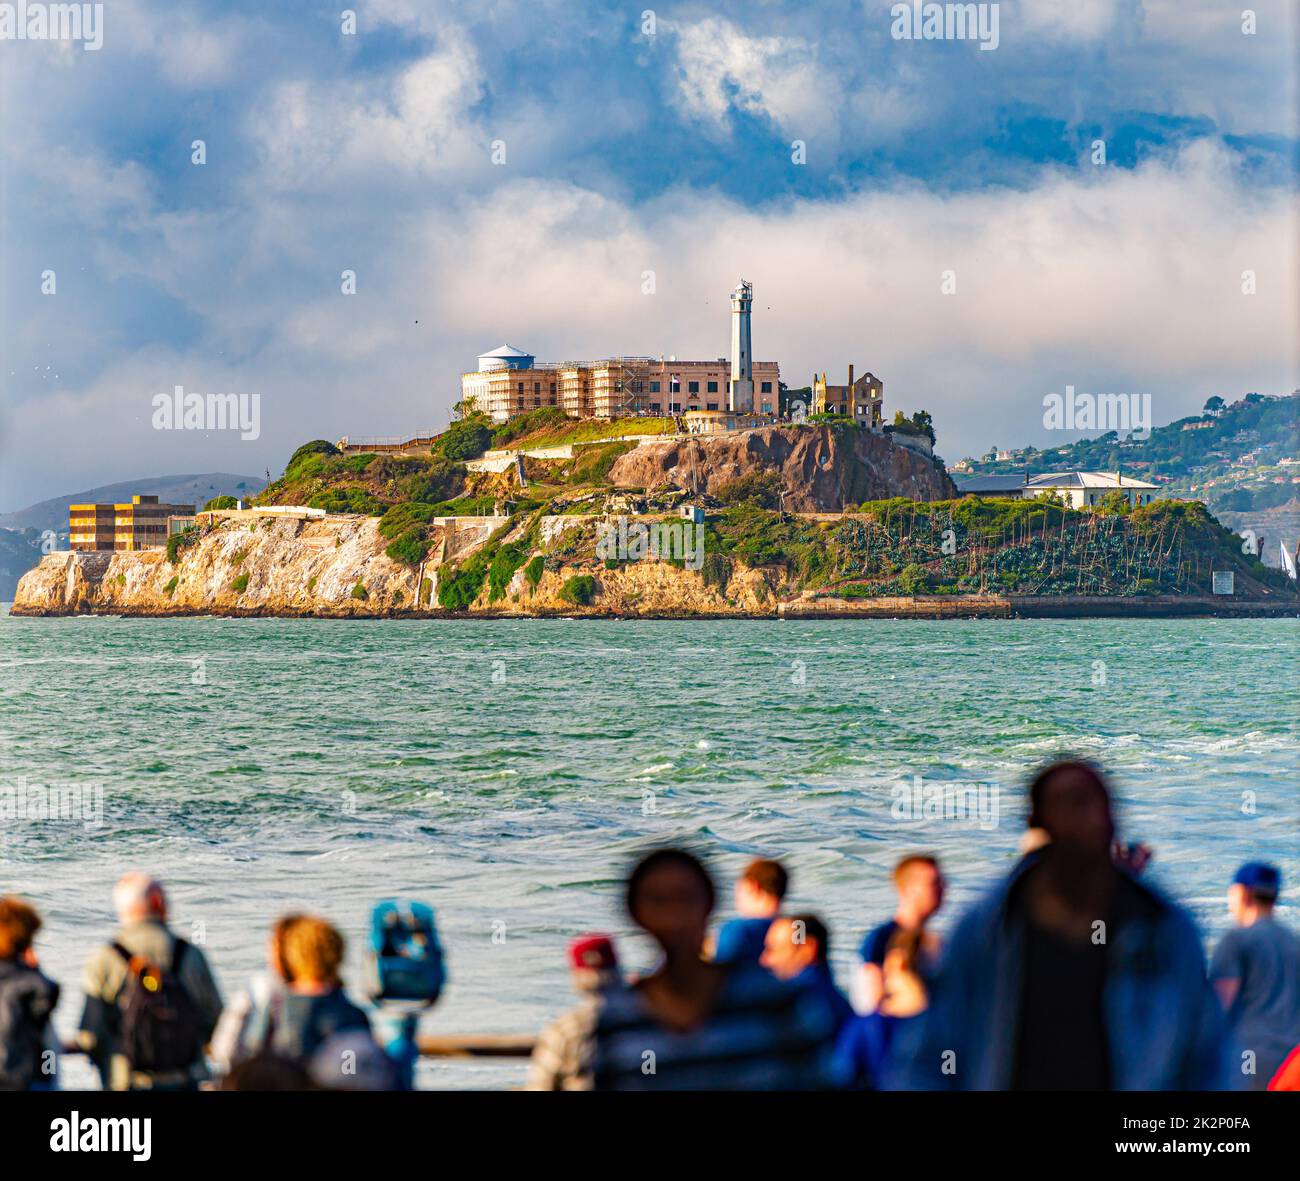 Alcatraz prison island in bay of San Francisco Stock Photo